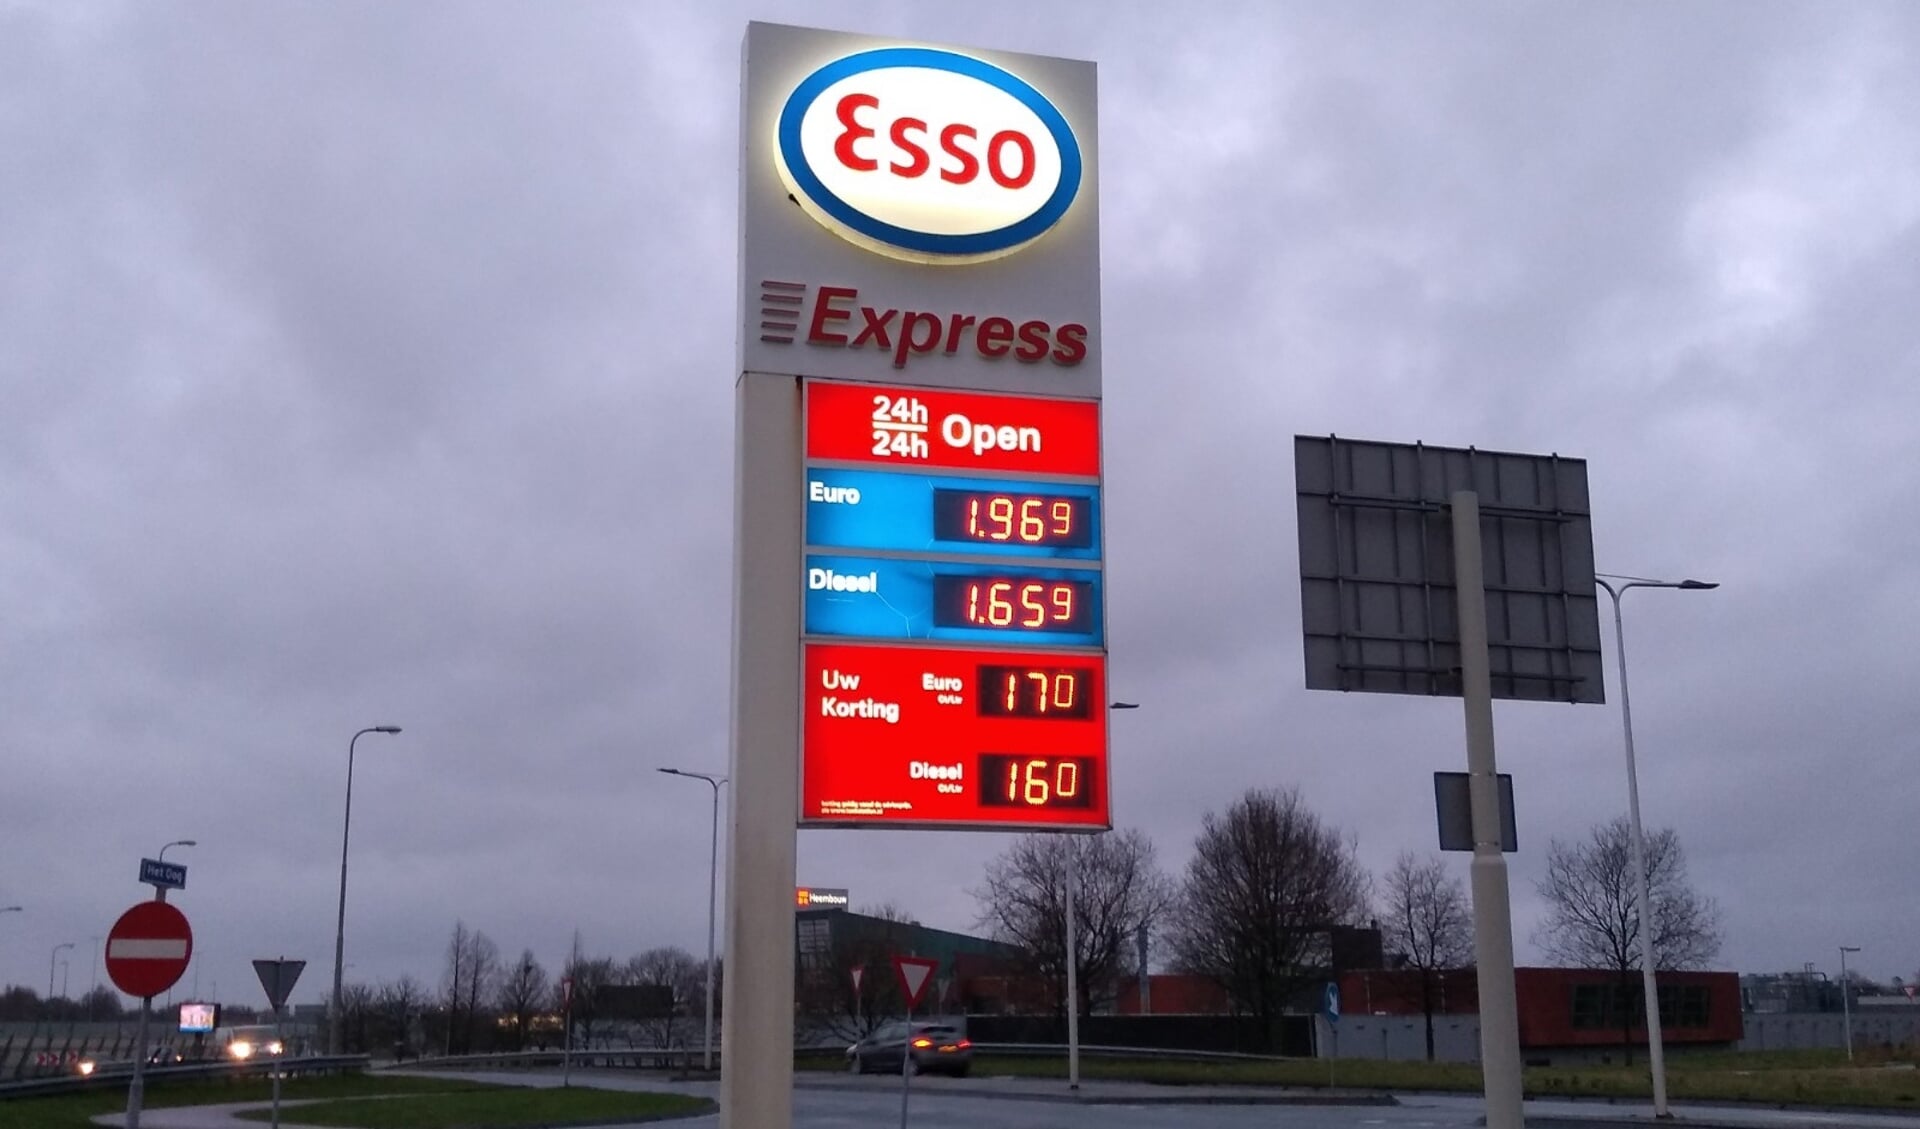 De brandstofprijzen zijn recent opnieuw gestegen naar recordhoogte. Esso staat zowel hoog in de lijsten van de goedkoopste als duurste stations langs de snelweg, de prijsverschillen tussen de Esso stations zijn dus erg groot.